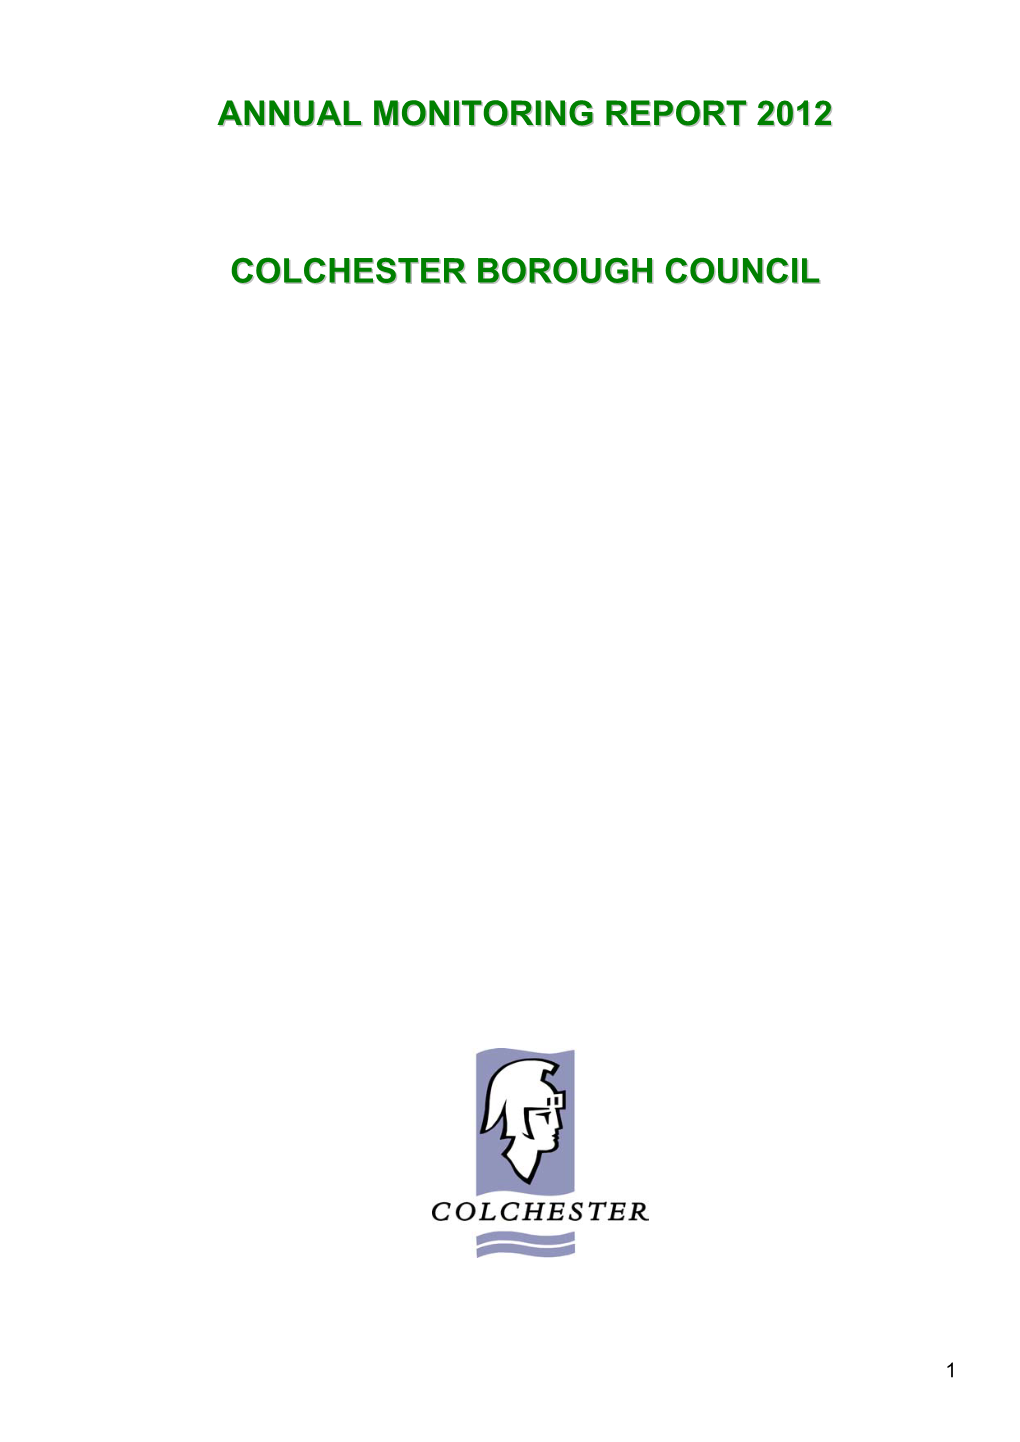 Annual Monitoring Report 2012 Colchester Borough